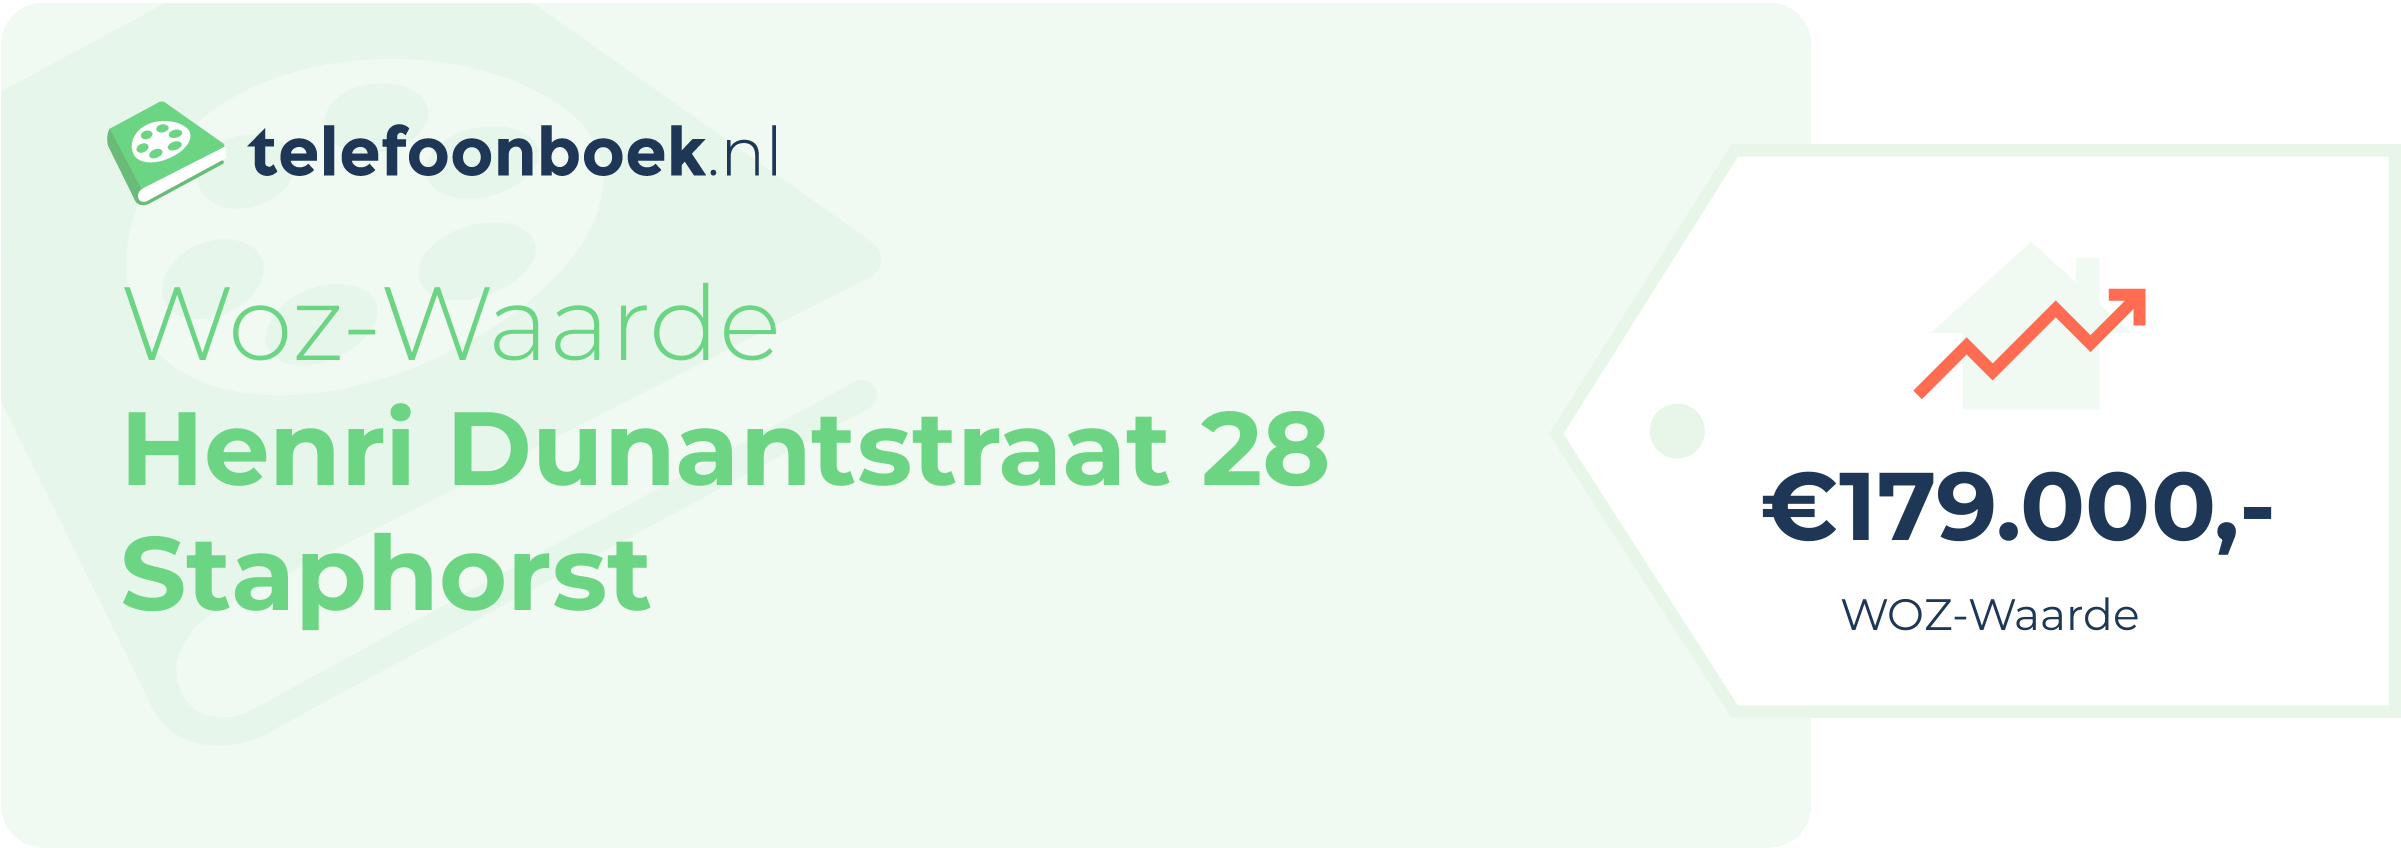 WOZ-waarde Henri Dunantstraat 28 Staphorst